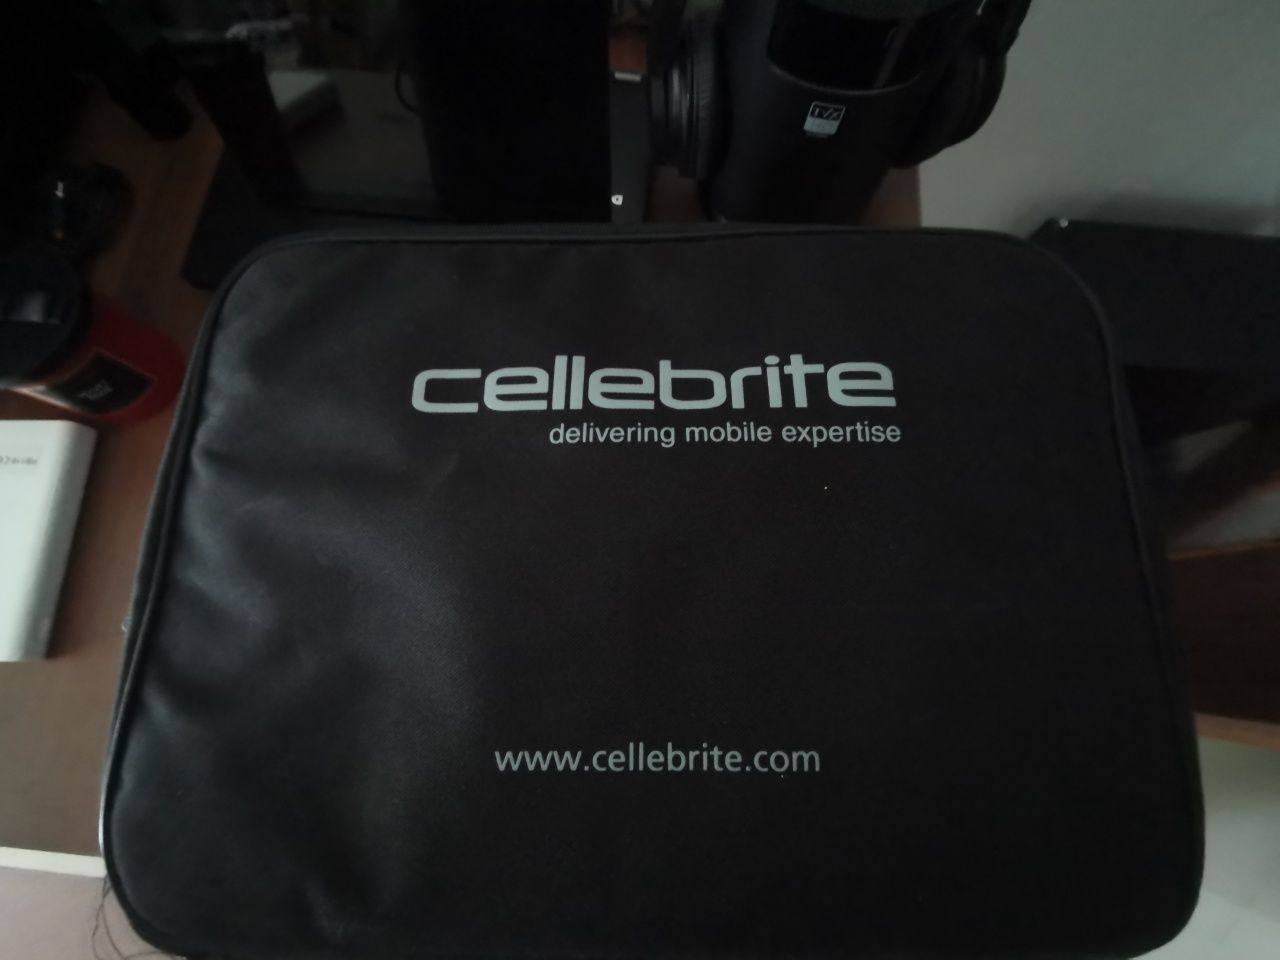 Cellebrite Touch 2 & Cellebrite PC